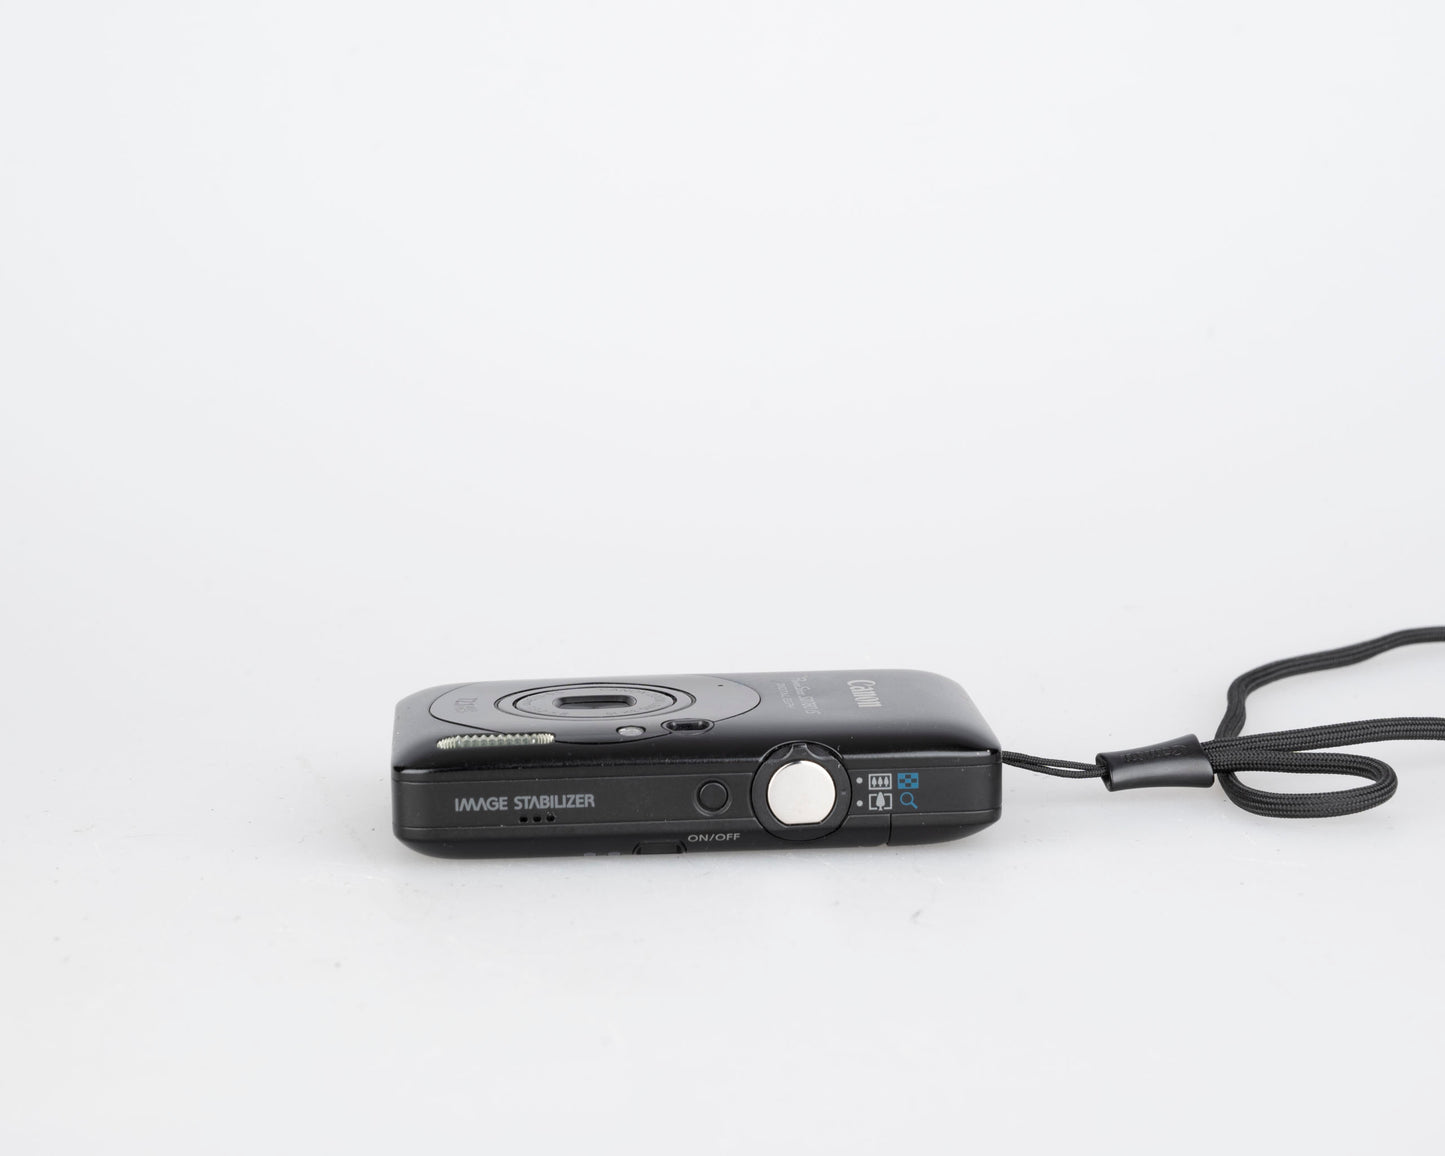 Appareil photo numérique Canon Powershot SD780 IS Digital Elph 12,1 MP CCD avec carte SD 16 Go + 2 batteries + chargeur